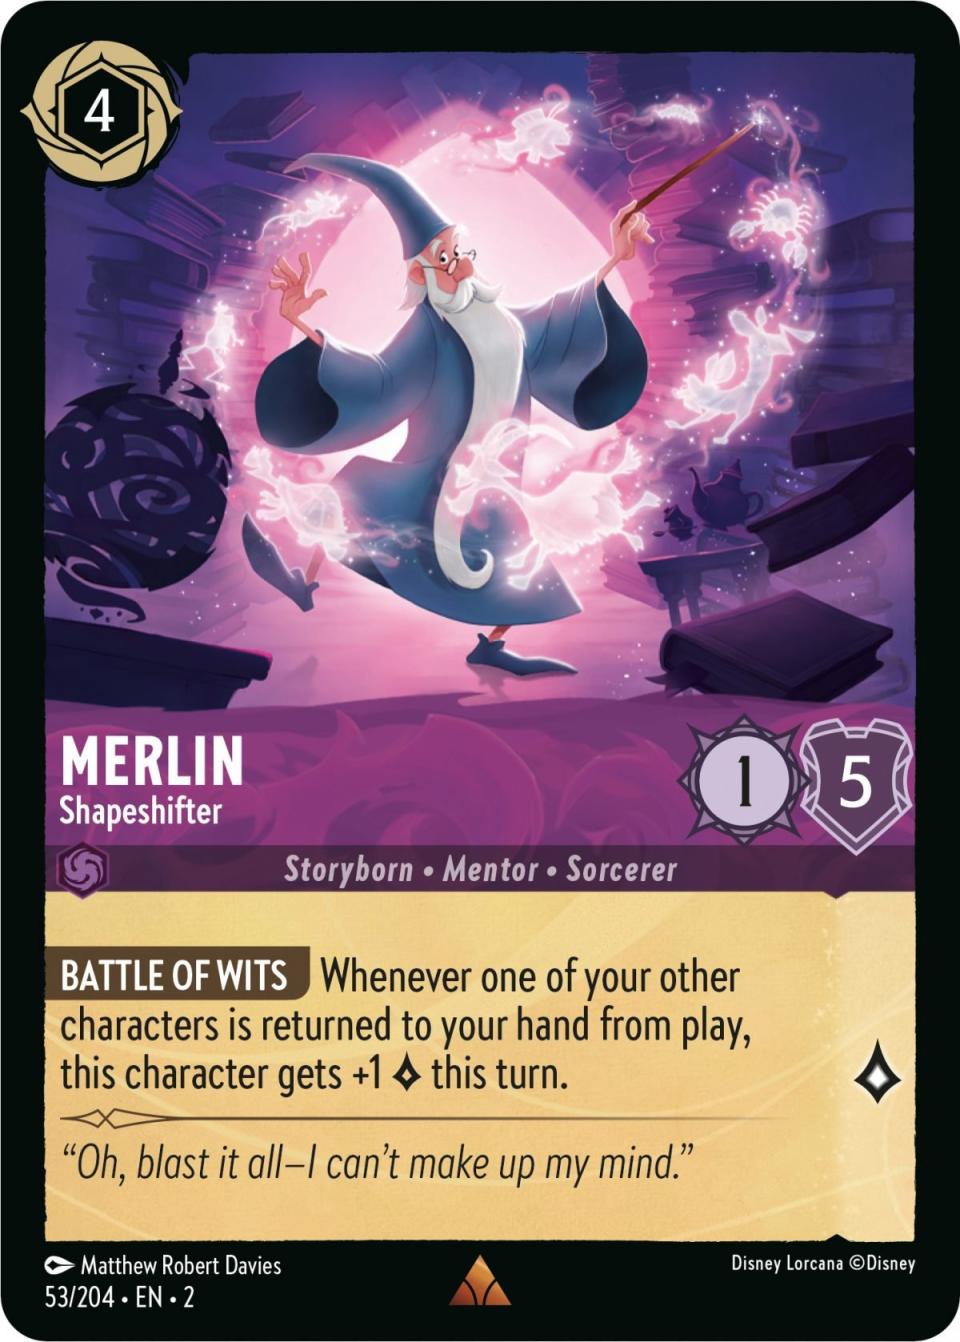 Merlin Shapeshifter card